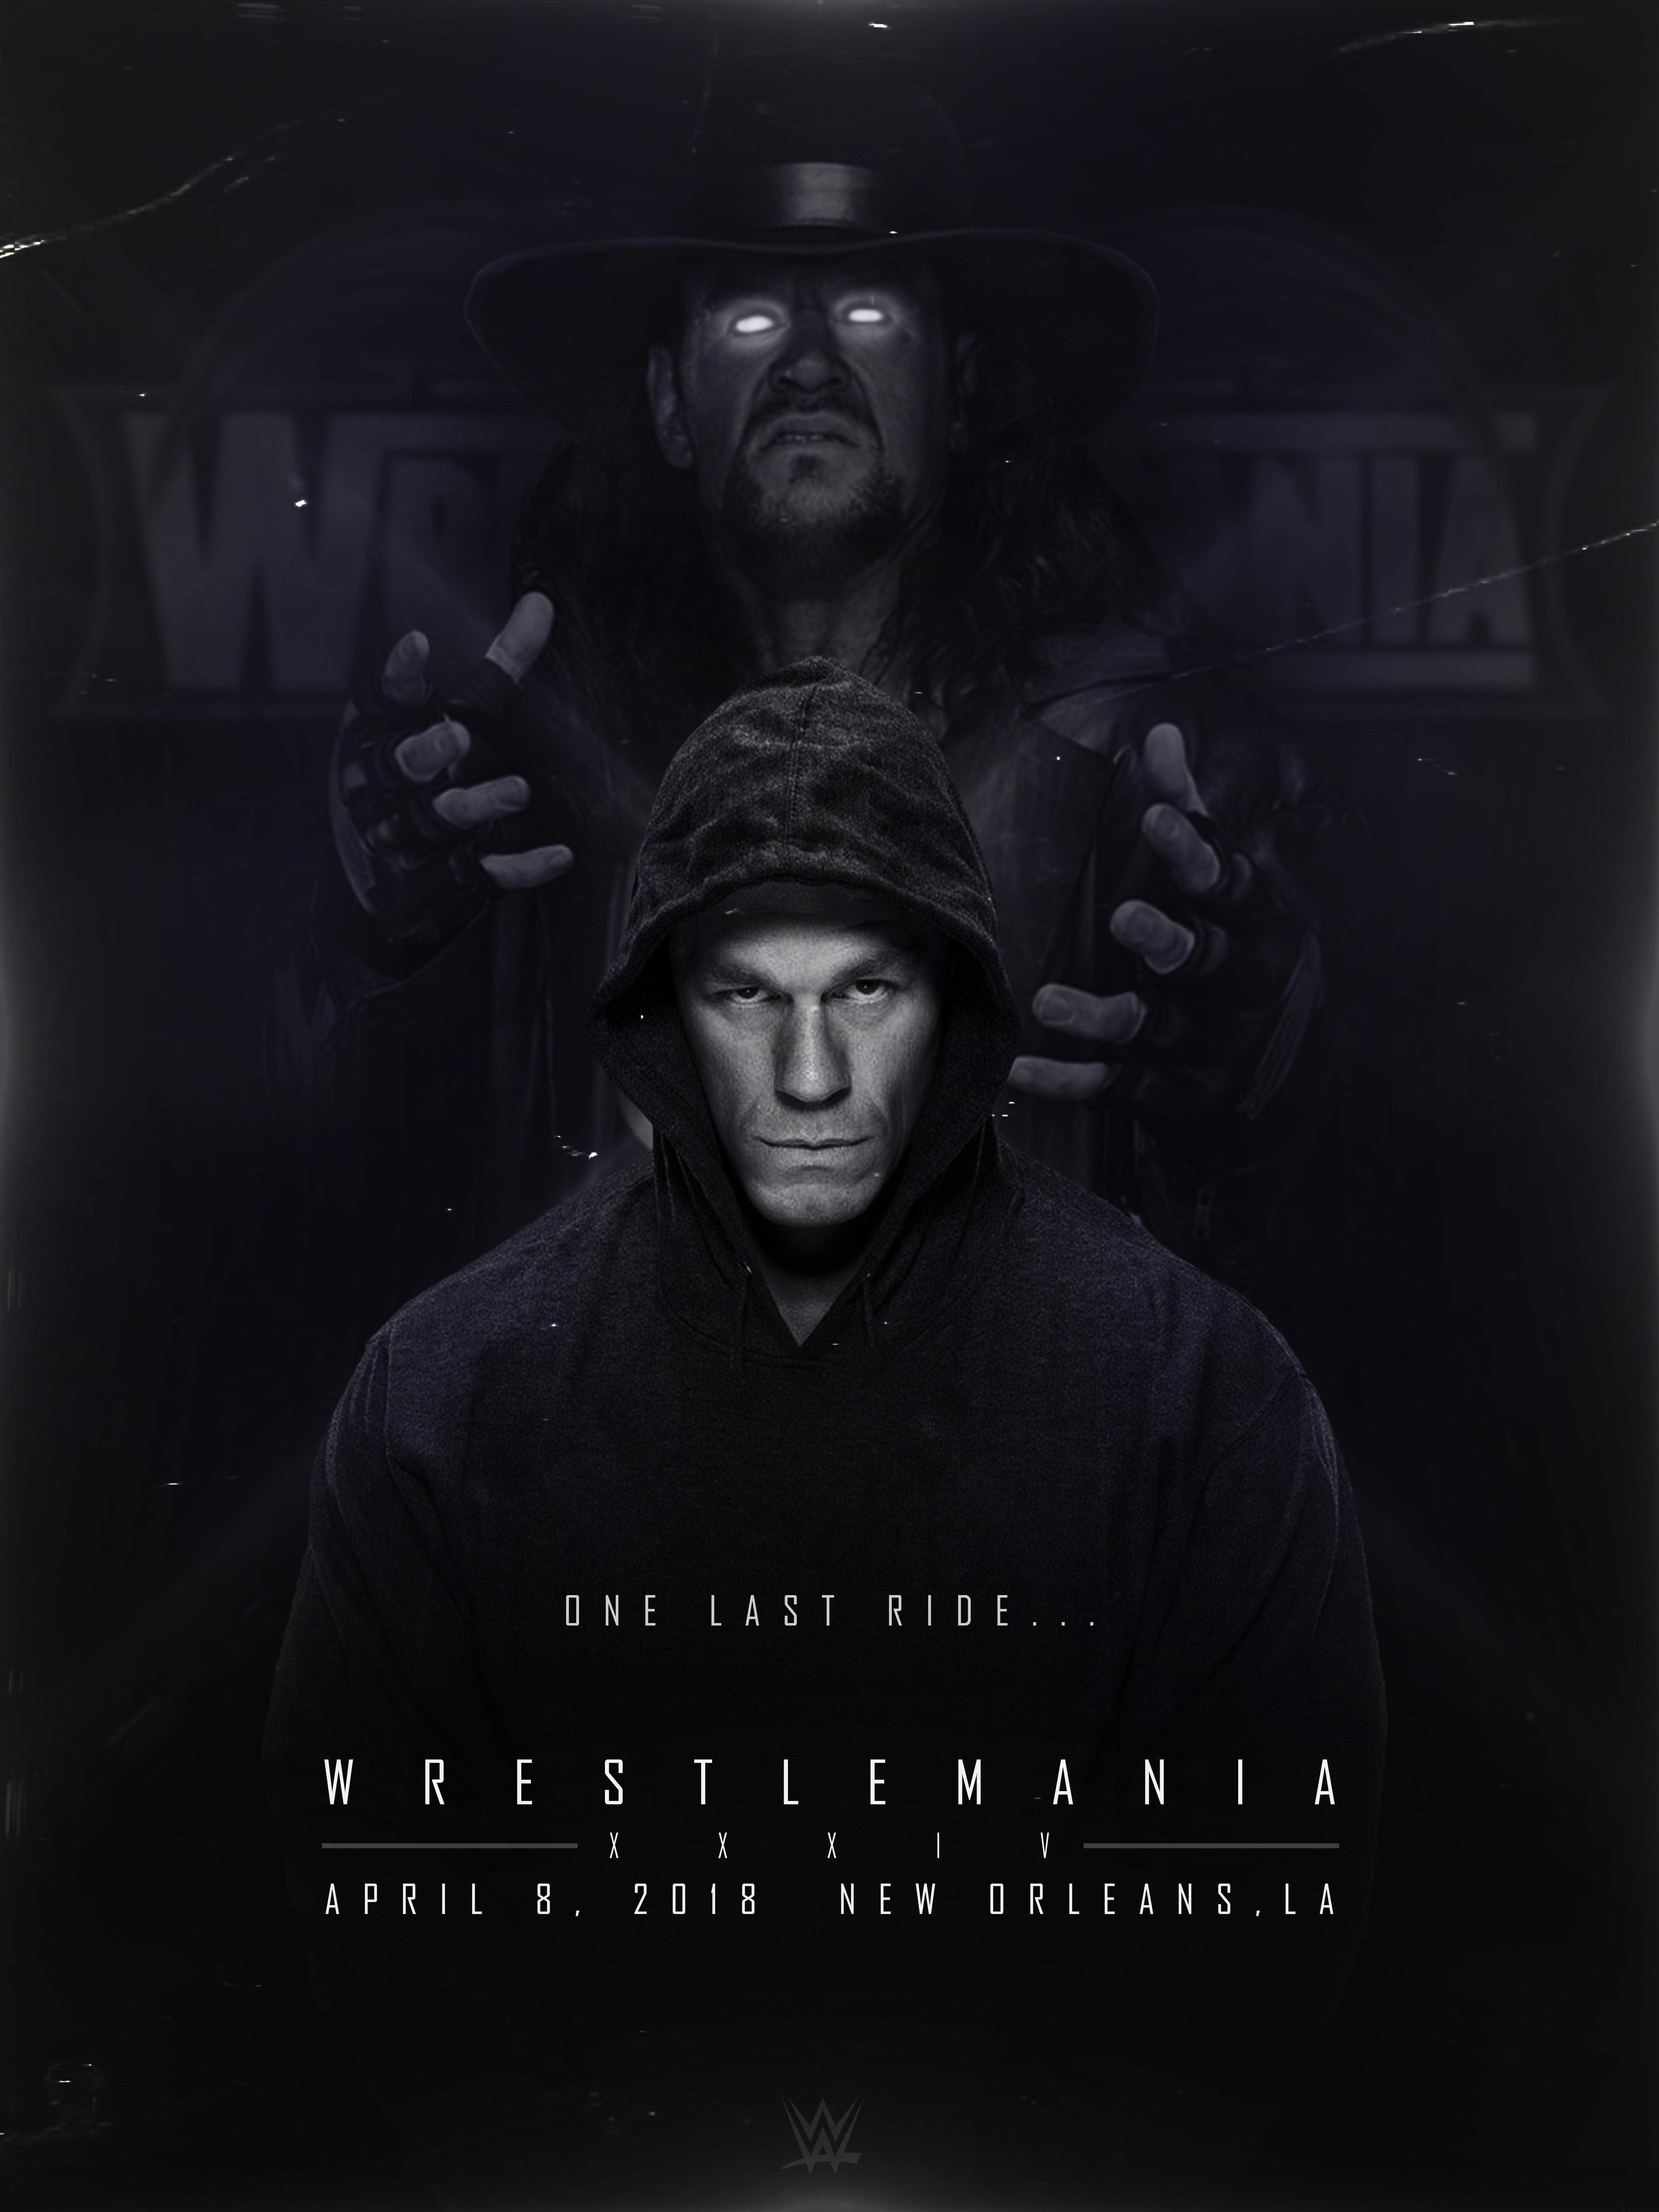 Wallpaper Of Made Concept Poster For The Undertaker Vs John Cena